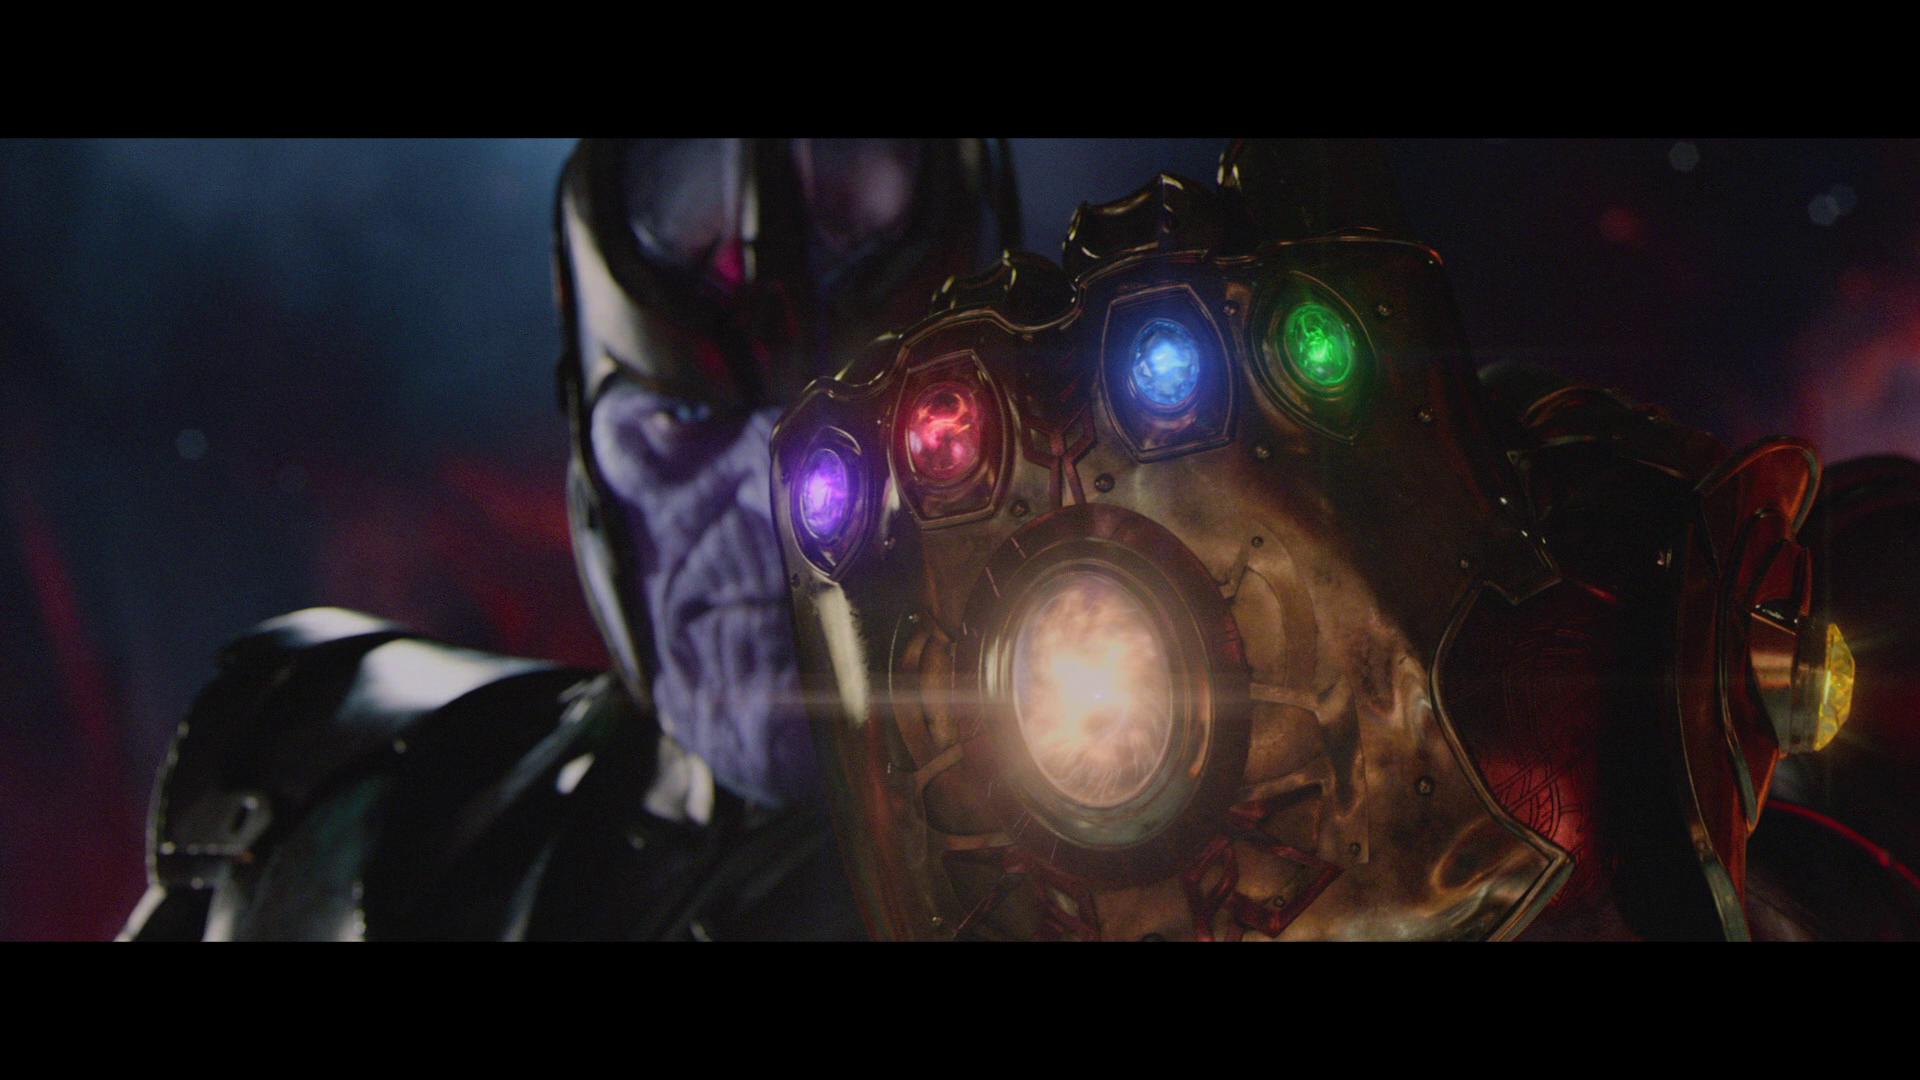 Ảnh về Thanos có độ phân giải cao 1920x1080 từ Avengers: Infinity War